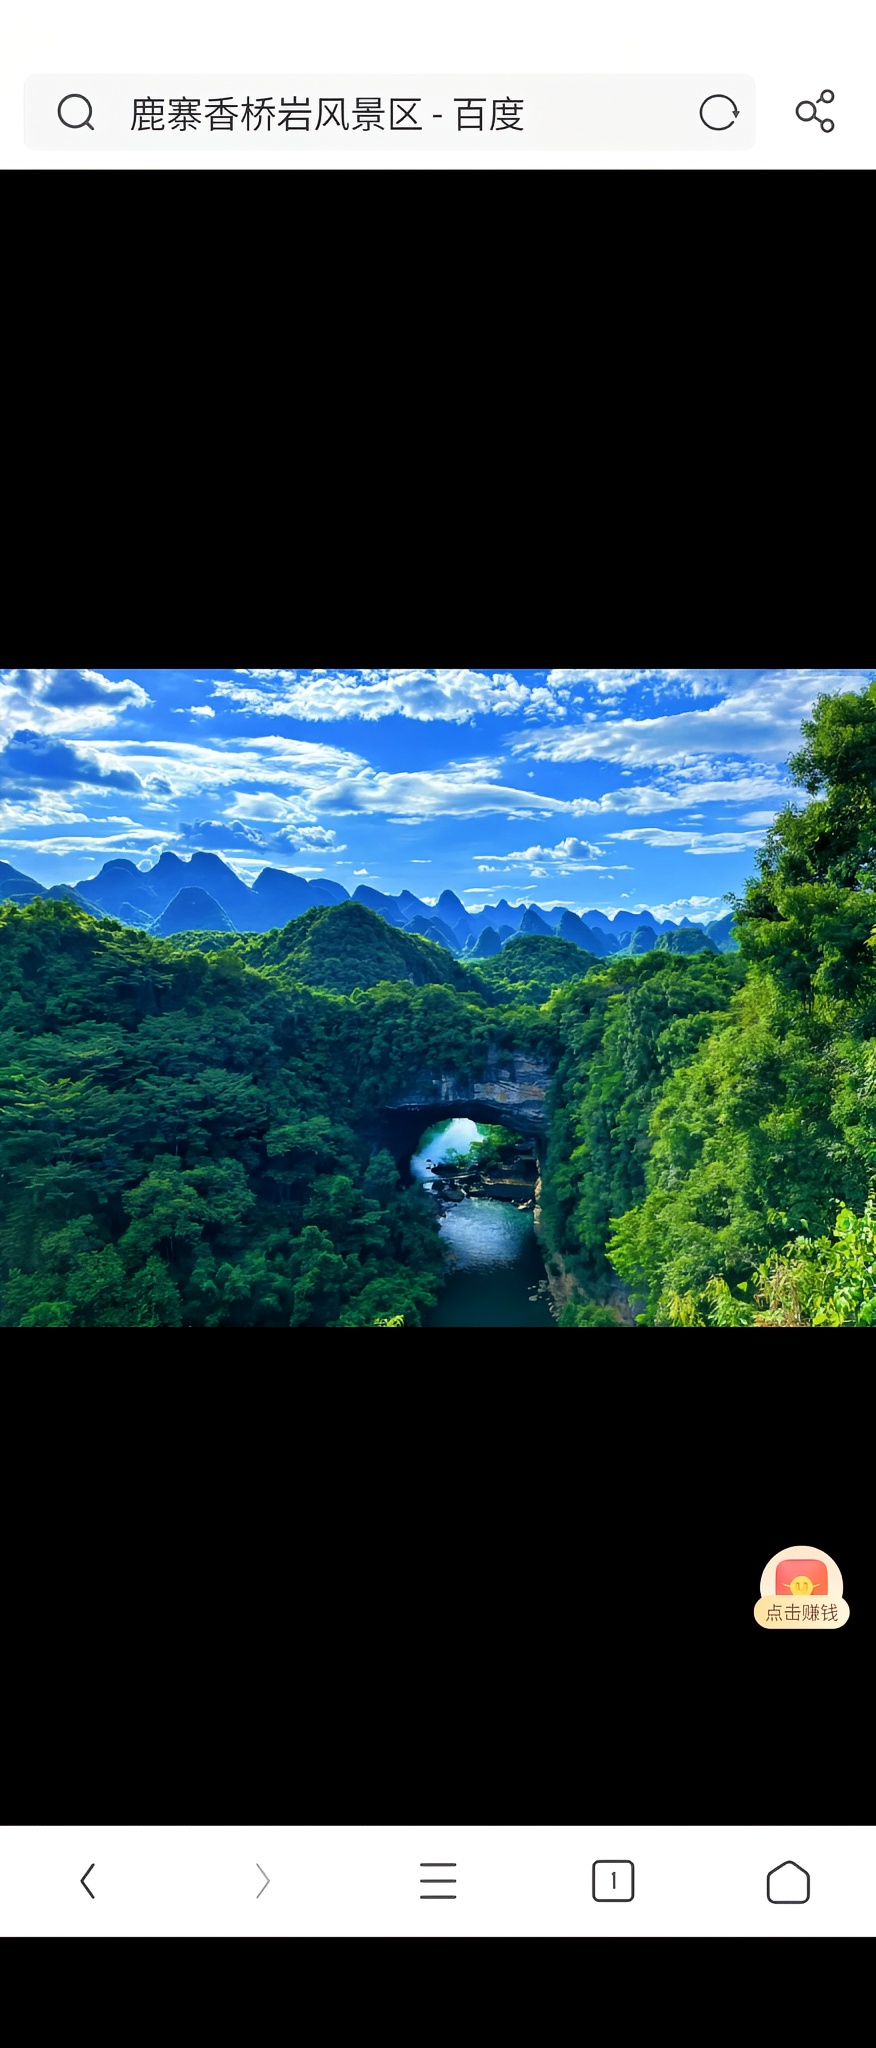 香桥岩风景区于1988年被列为省级风景名胜区，它南起柳州市鹿寨县中渡镇，北至枫木坪，长10公里，宽3